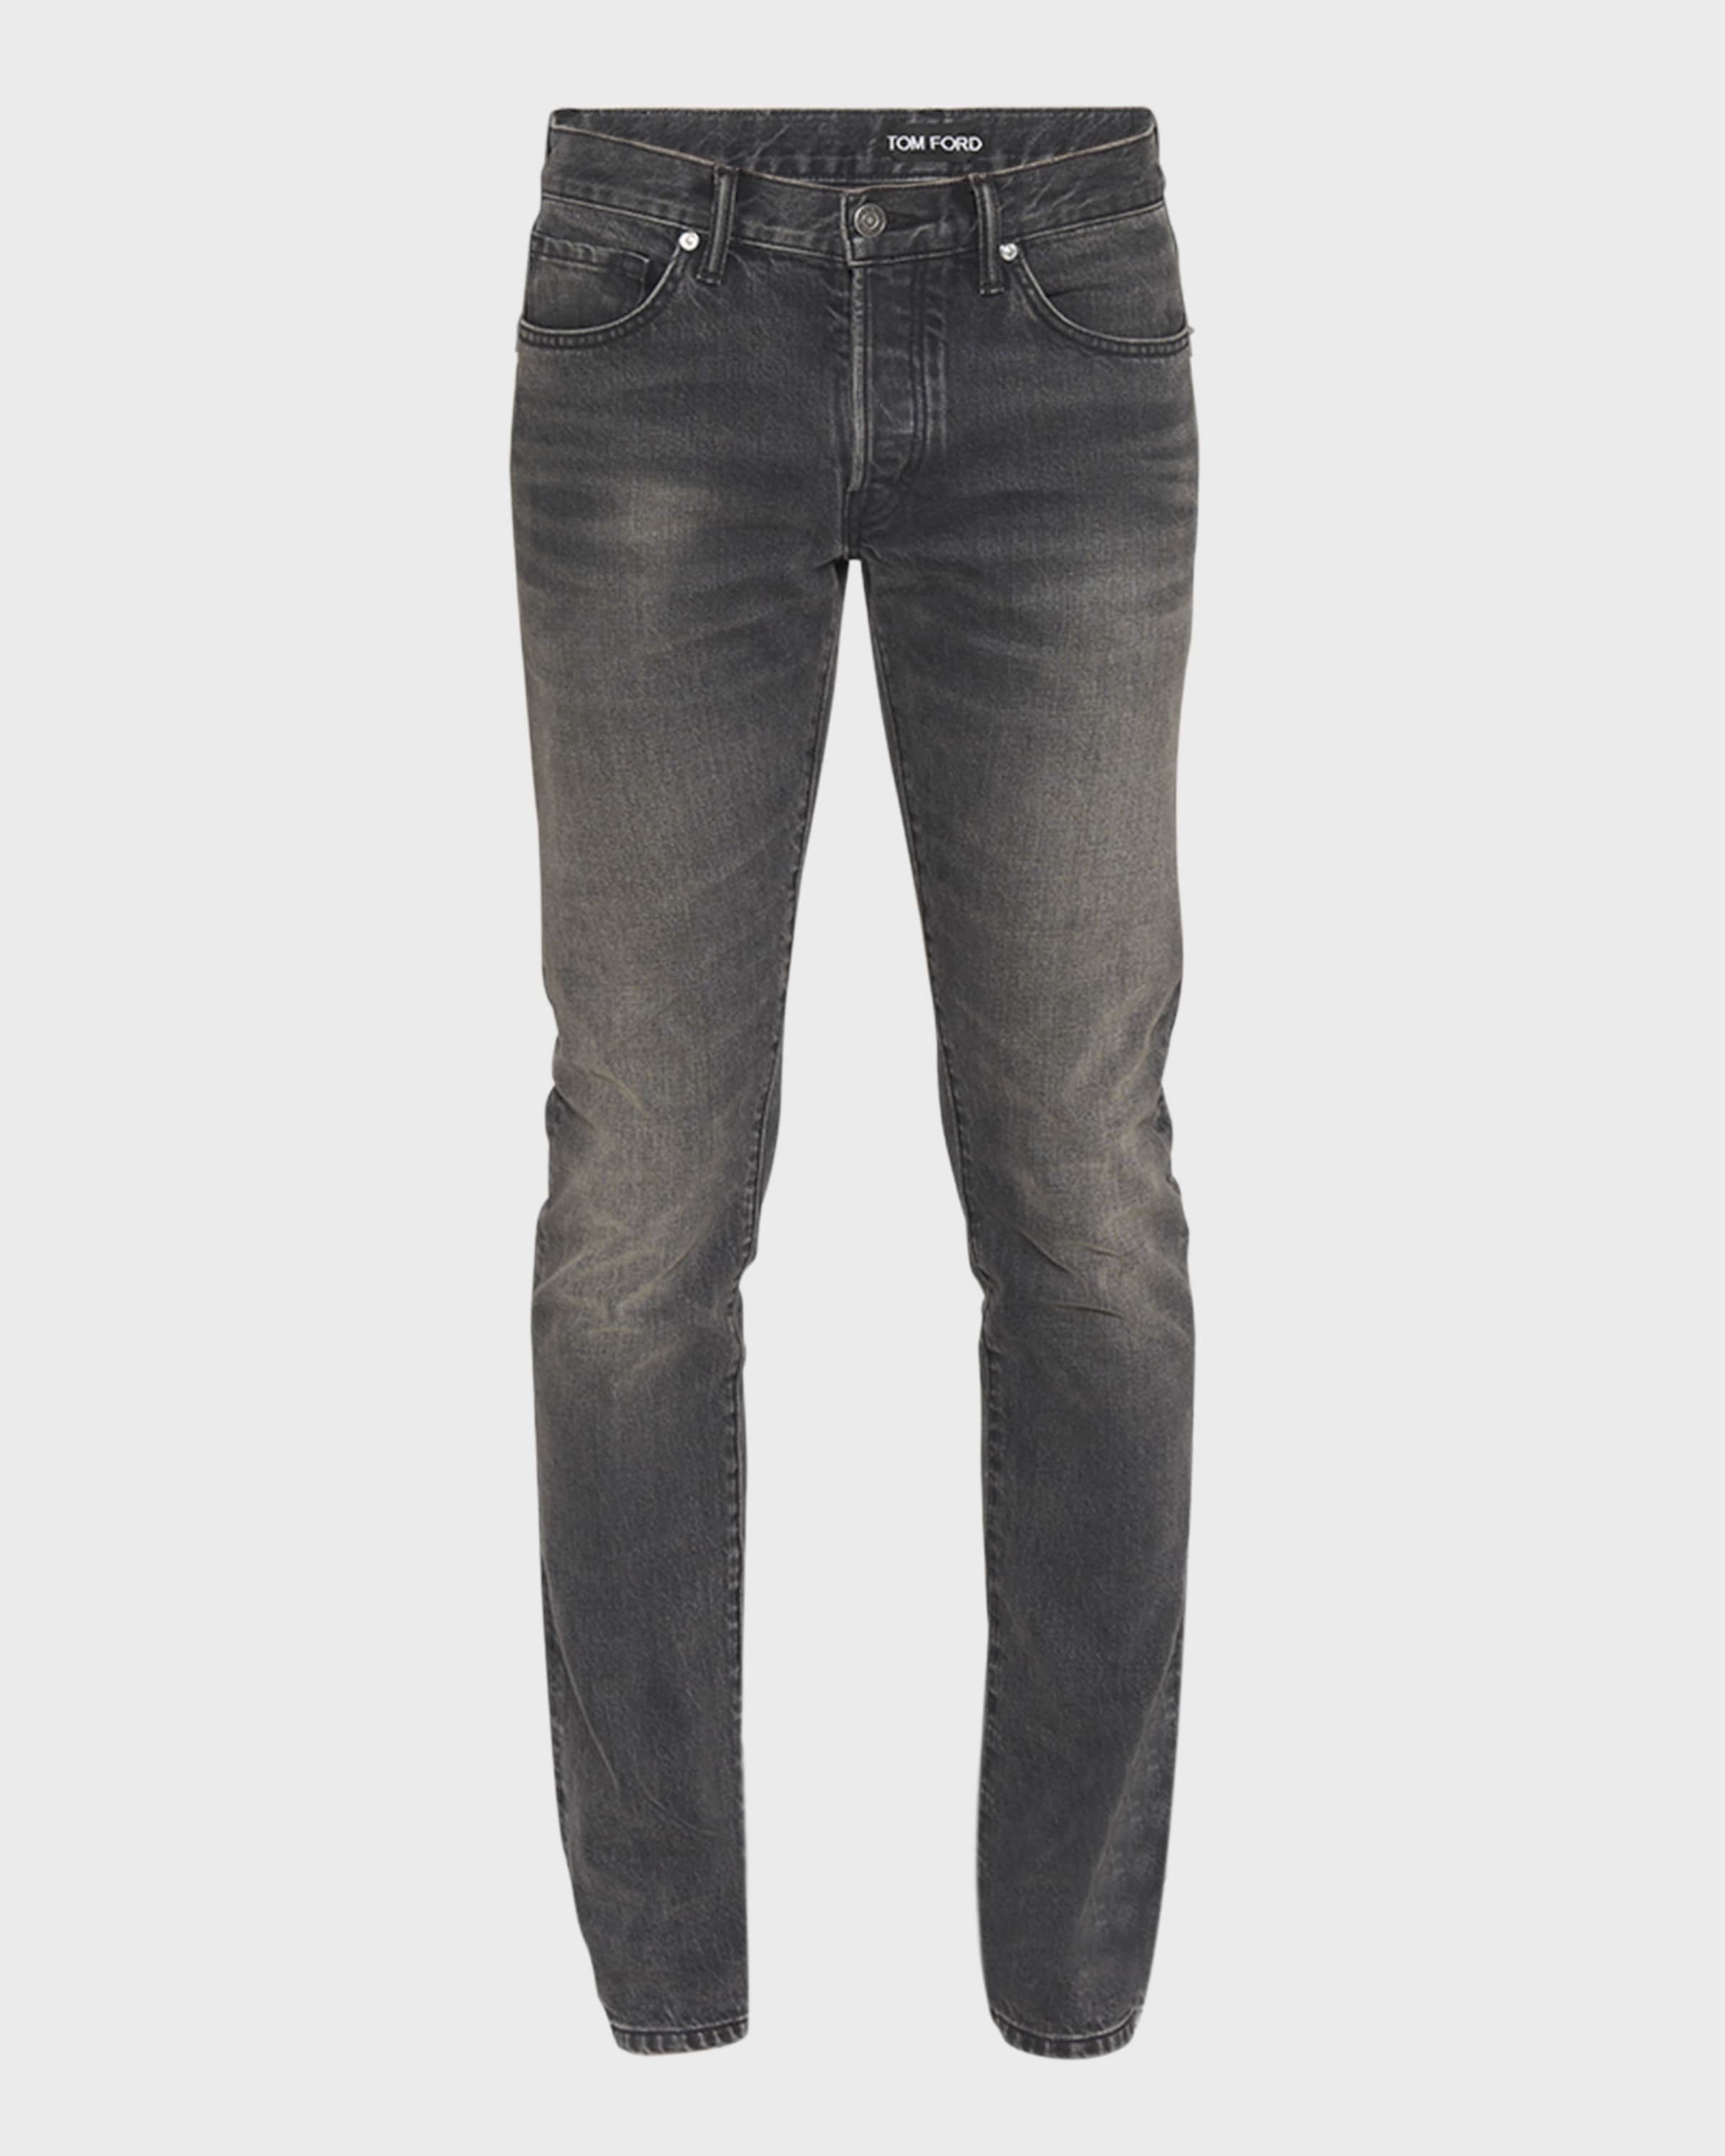 Men's Slim Fit Black Wash Jeans - 1